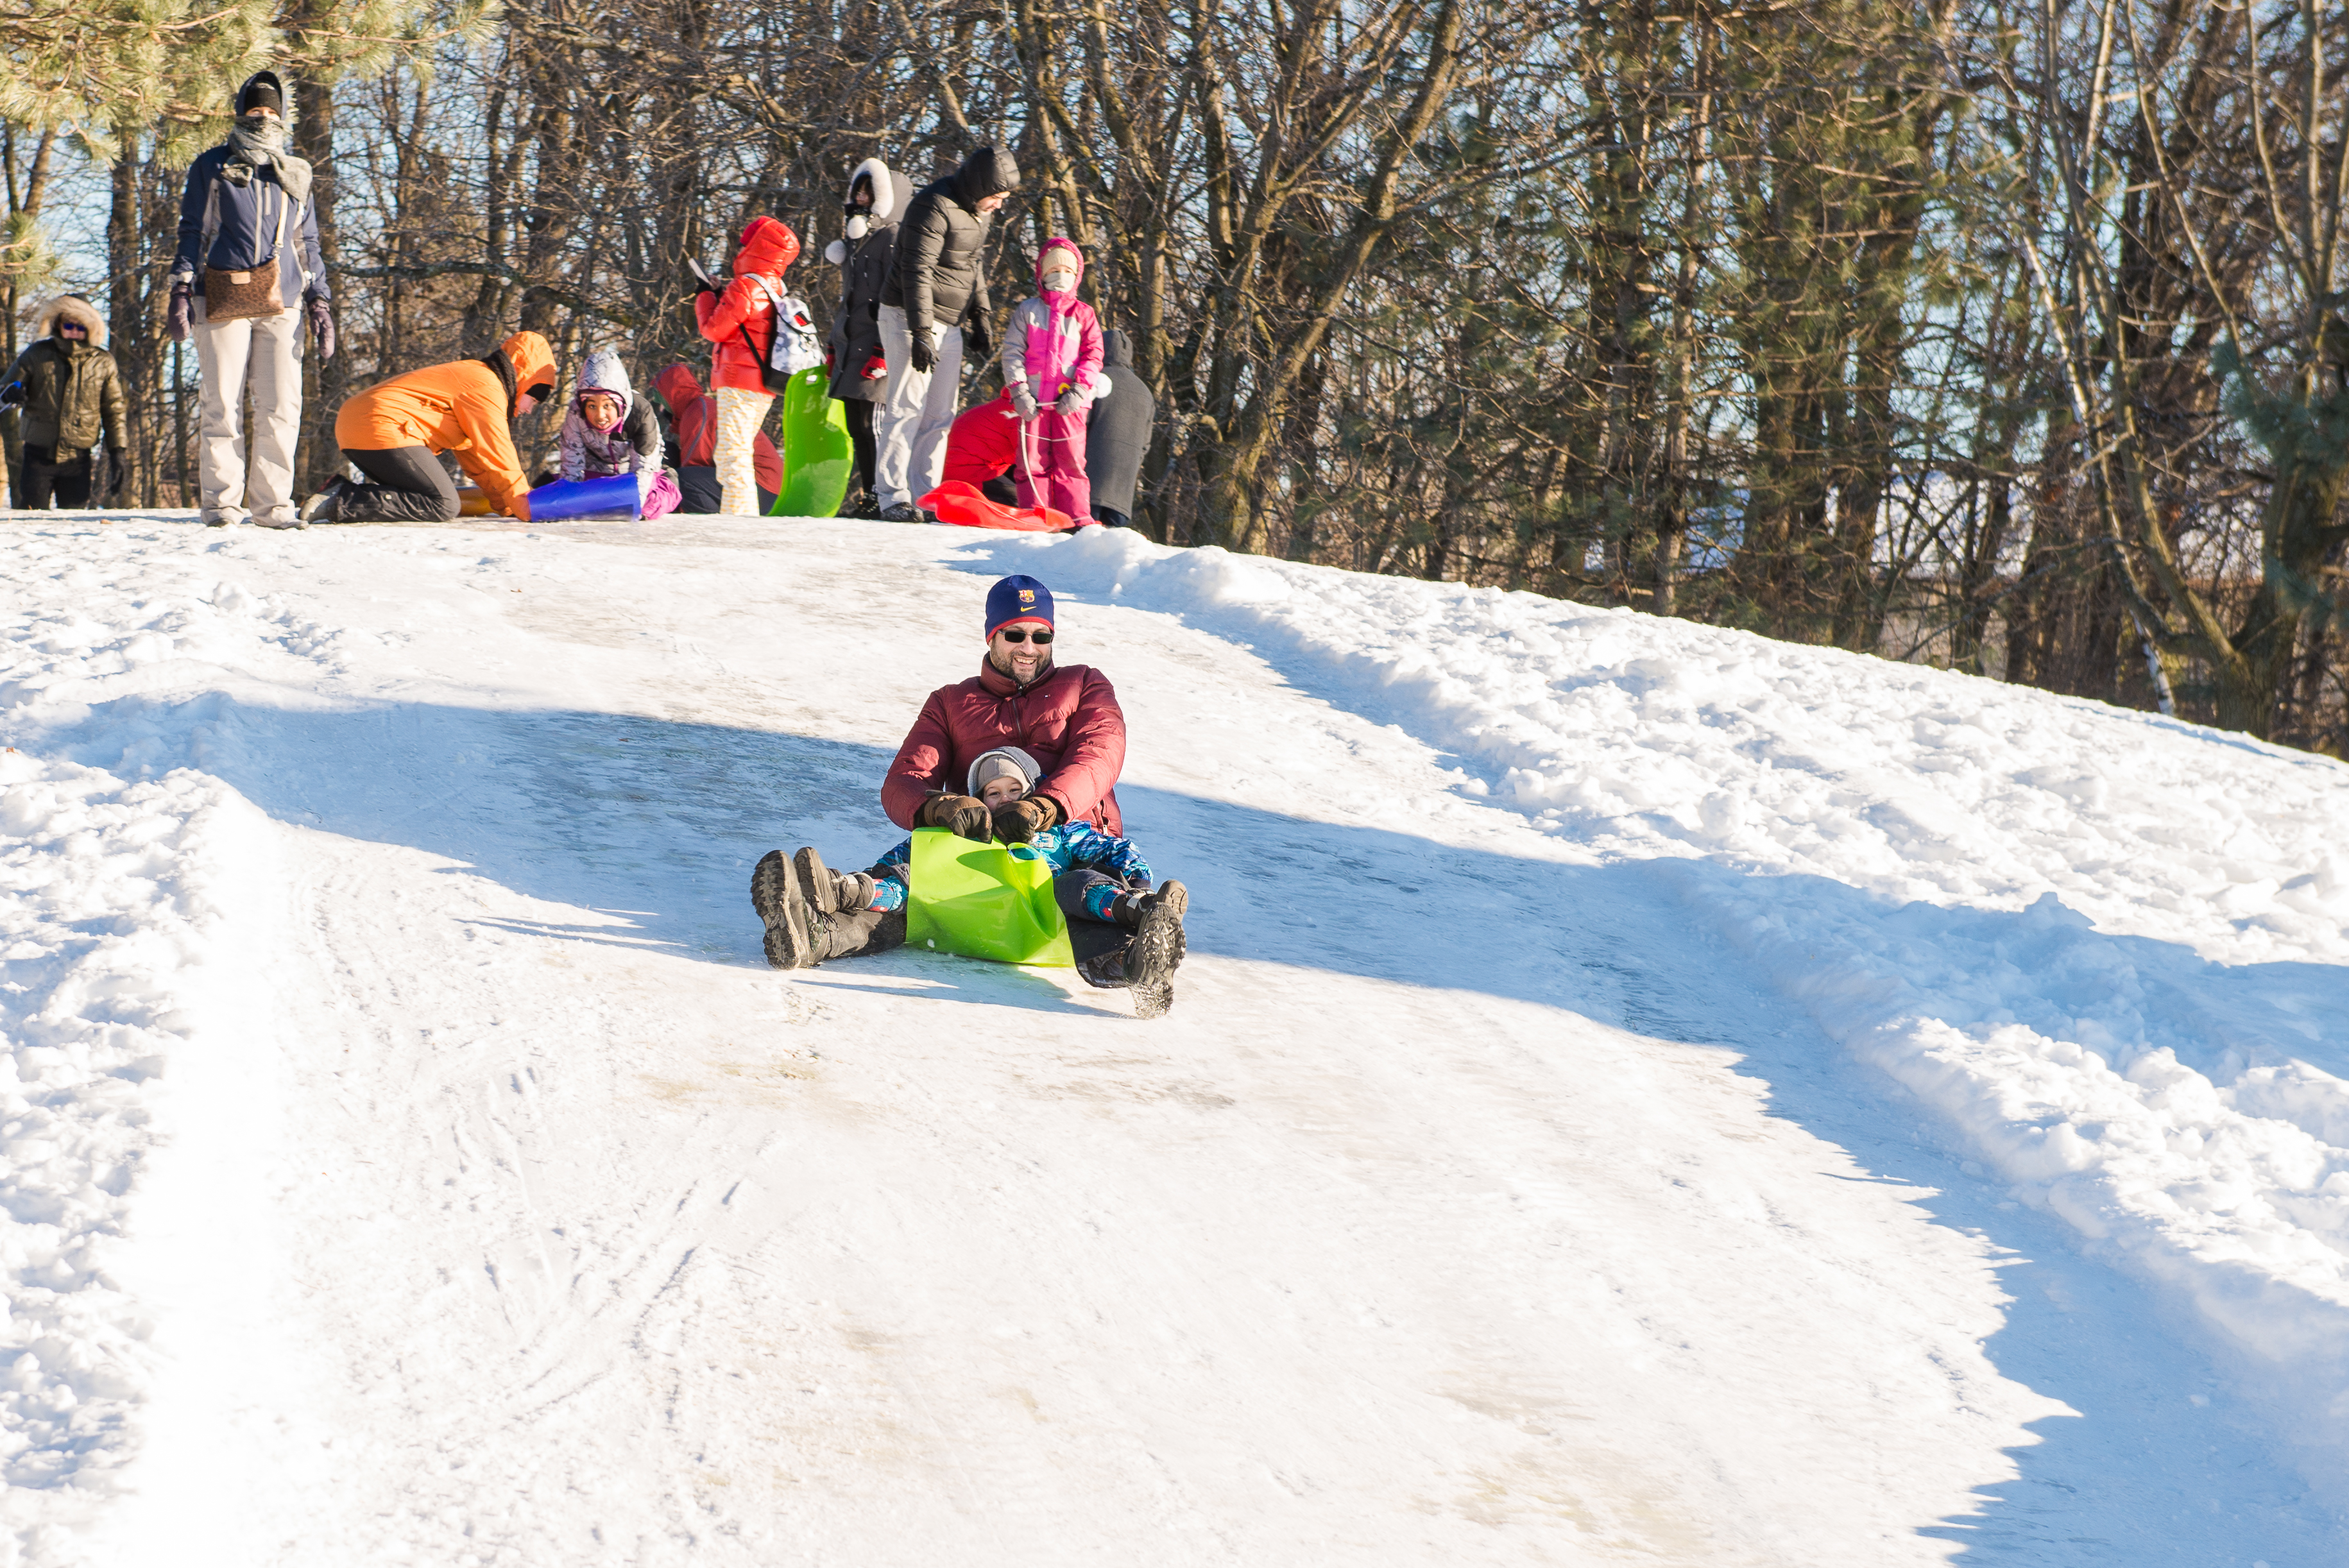 Ville de Brossard - À partir de demain, 30 décembre, entre 10 h et 17 h,  des pistes de ski de fond du grand parc urbain de Brossard et le chalet  seront